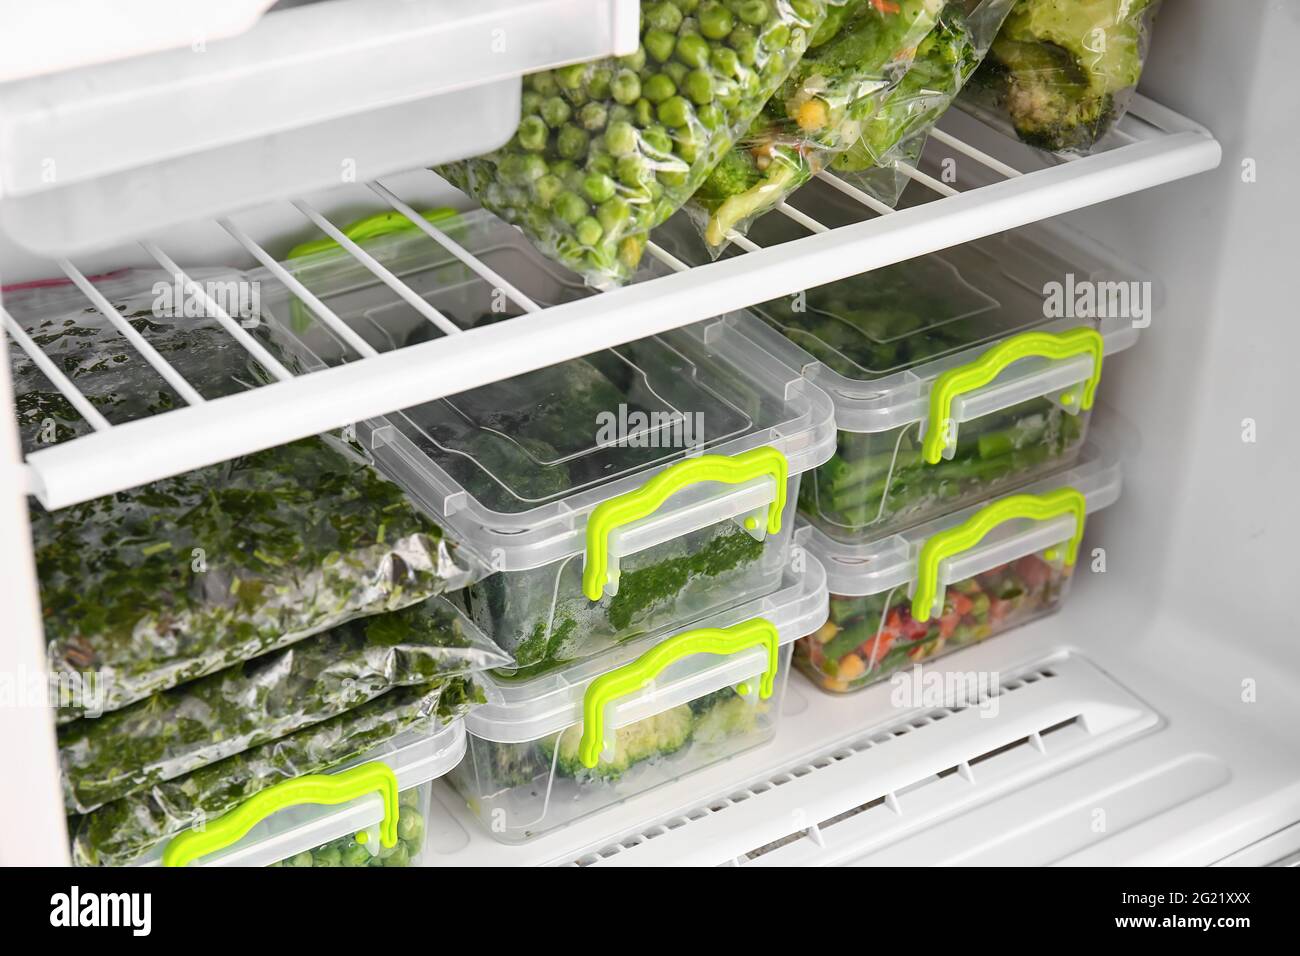 https://c8.alamy.com/compes/2g21xxx/contenedores-y-bolsas-de-plastico-con-verduras-en-el-refrigerador-2g21xxx.jpg